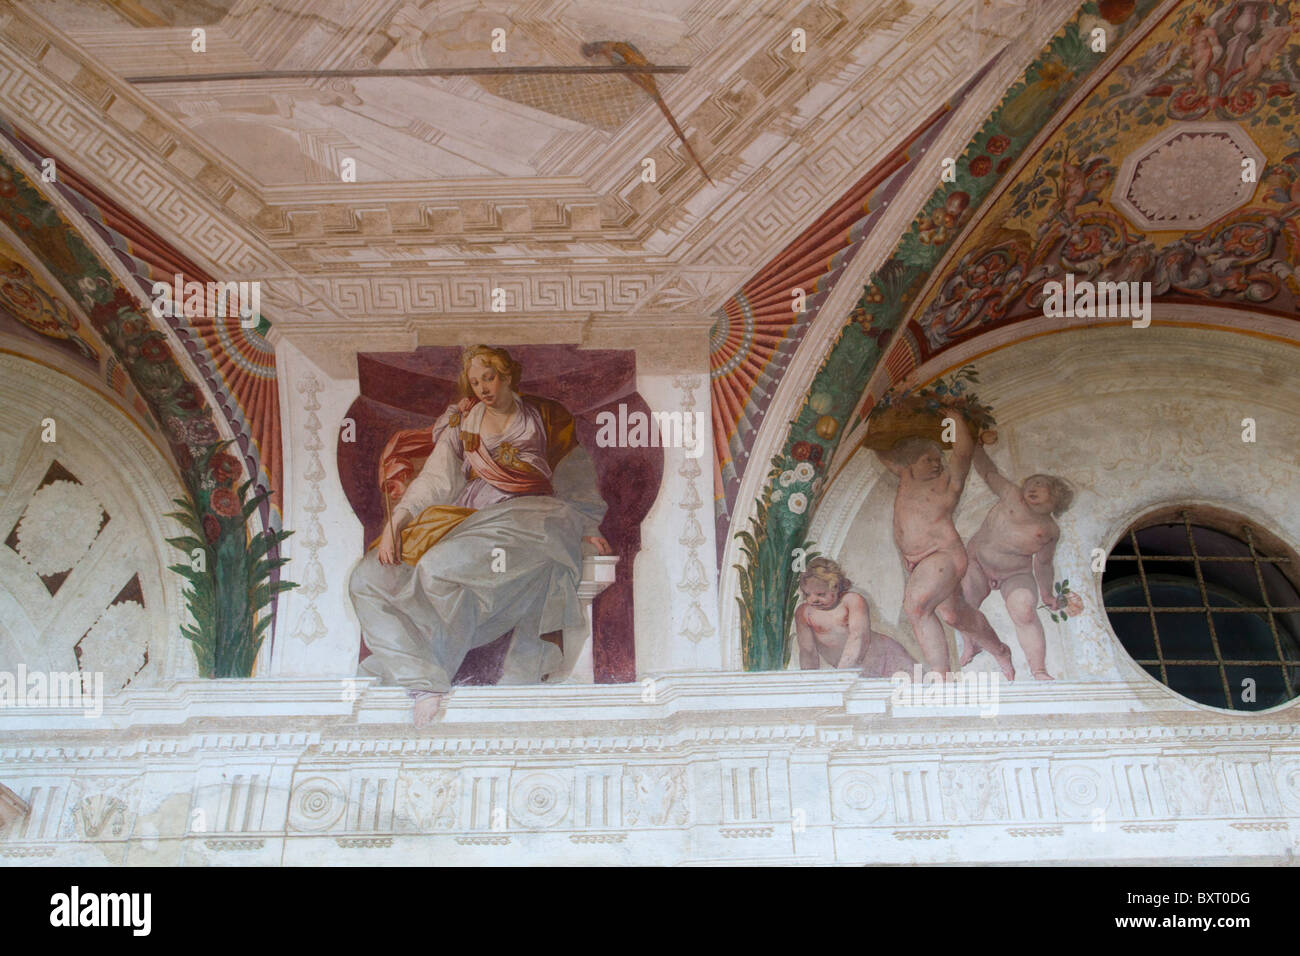 Balcony with fresco painted by Agostino Tassi, Palazzina Montalto, Villa Lante, Bagnaia, Lazio, Italy Stock Photo